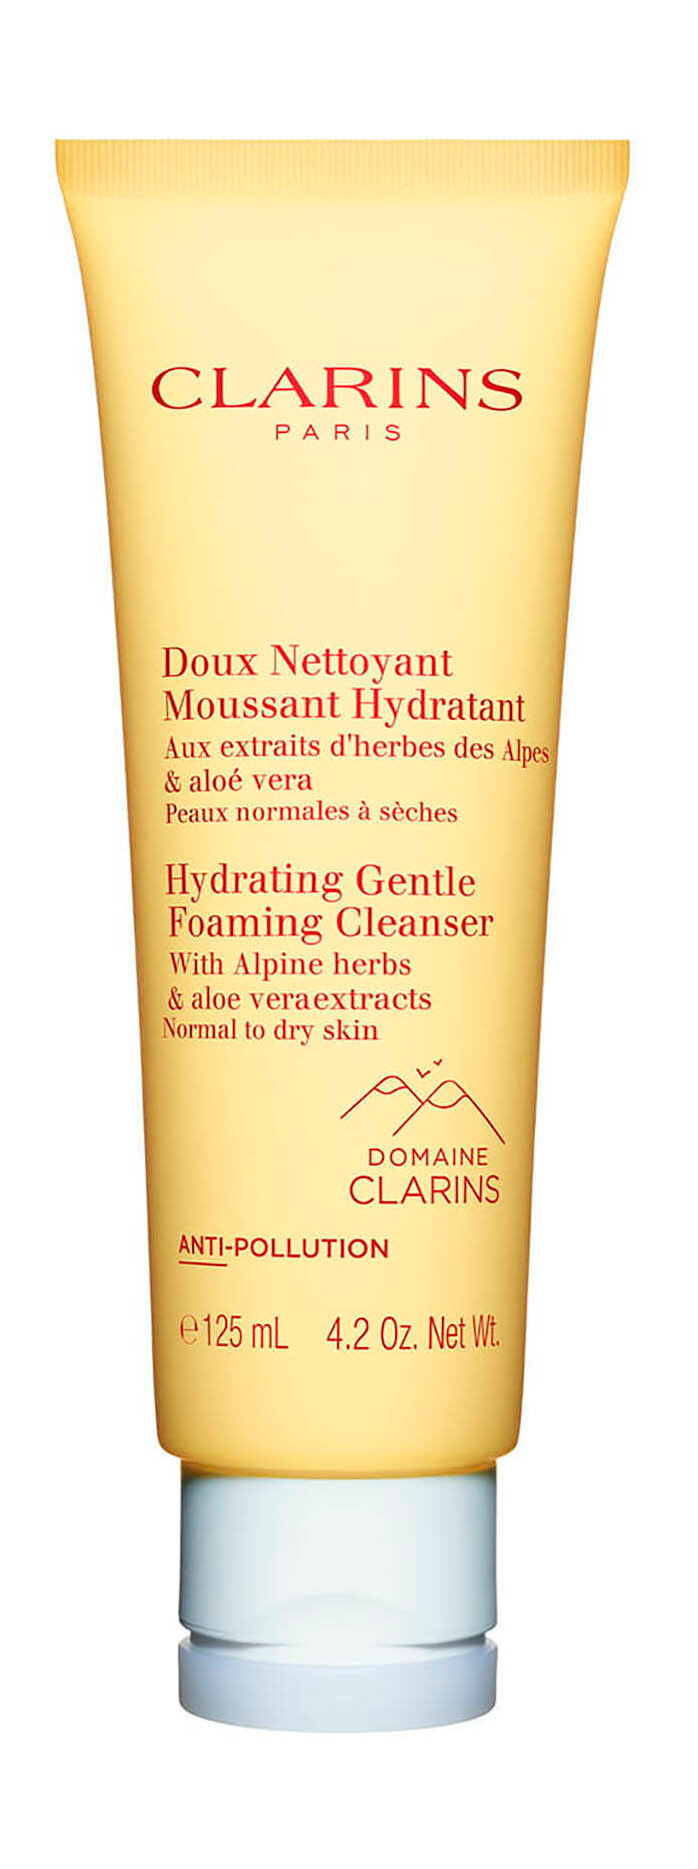 Очищающий пенящийся крем для нормальной и сухой кожи Clarins Hydrating Gentle Foaming Cleanser /125 мл/гр.